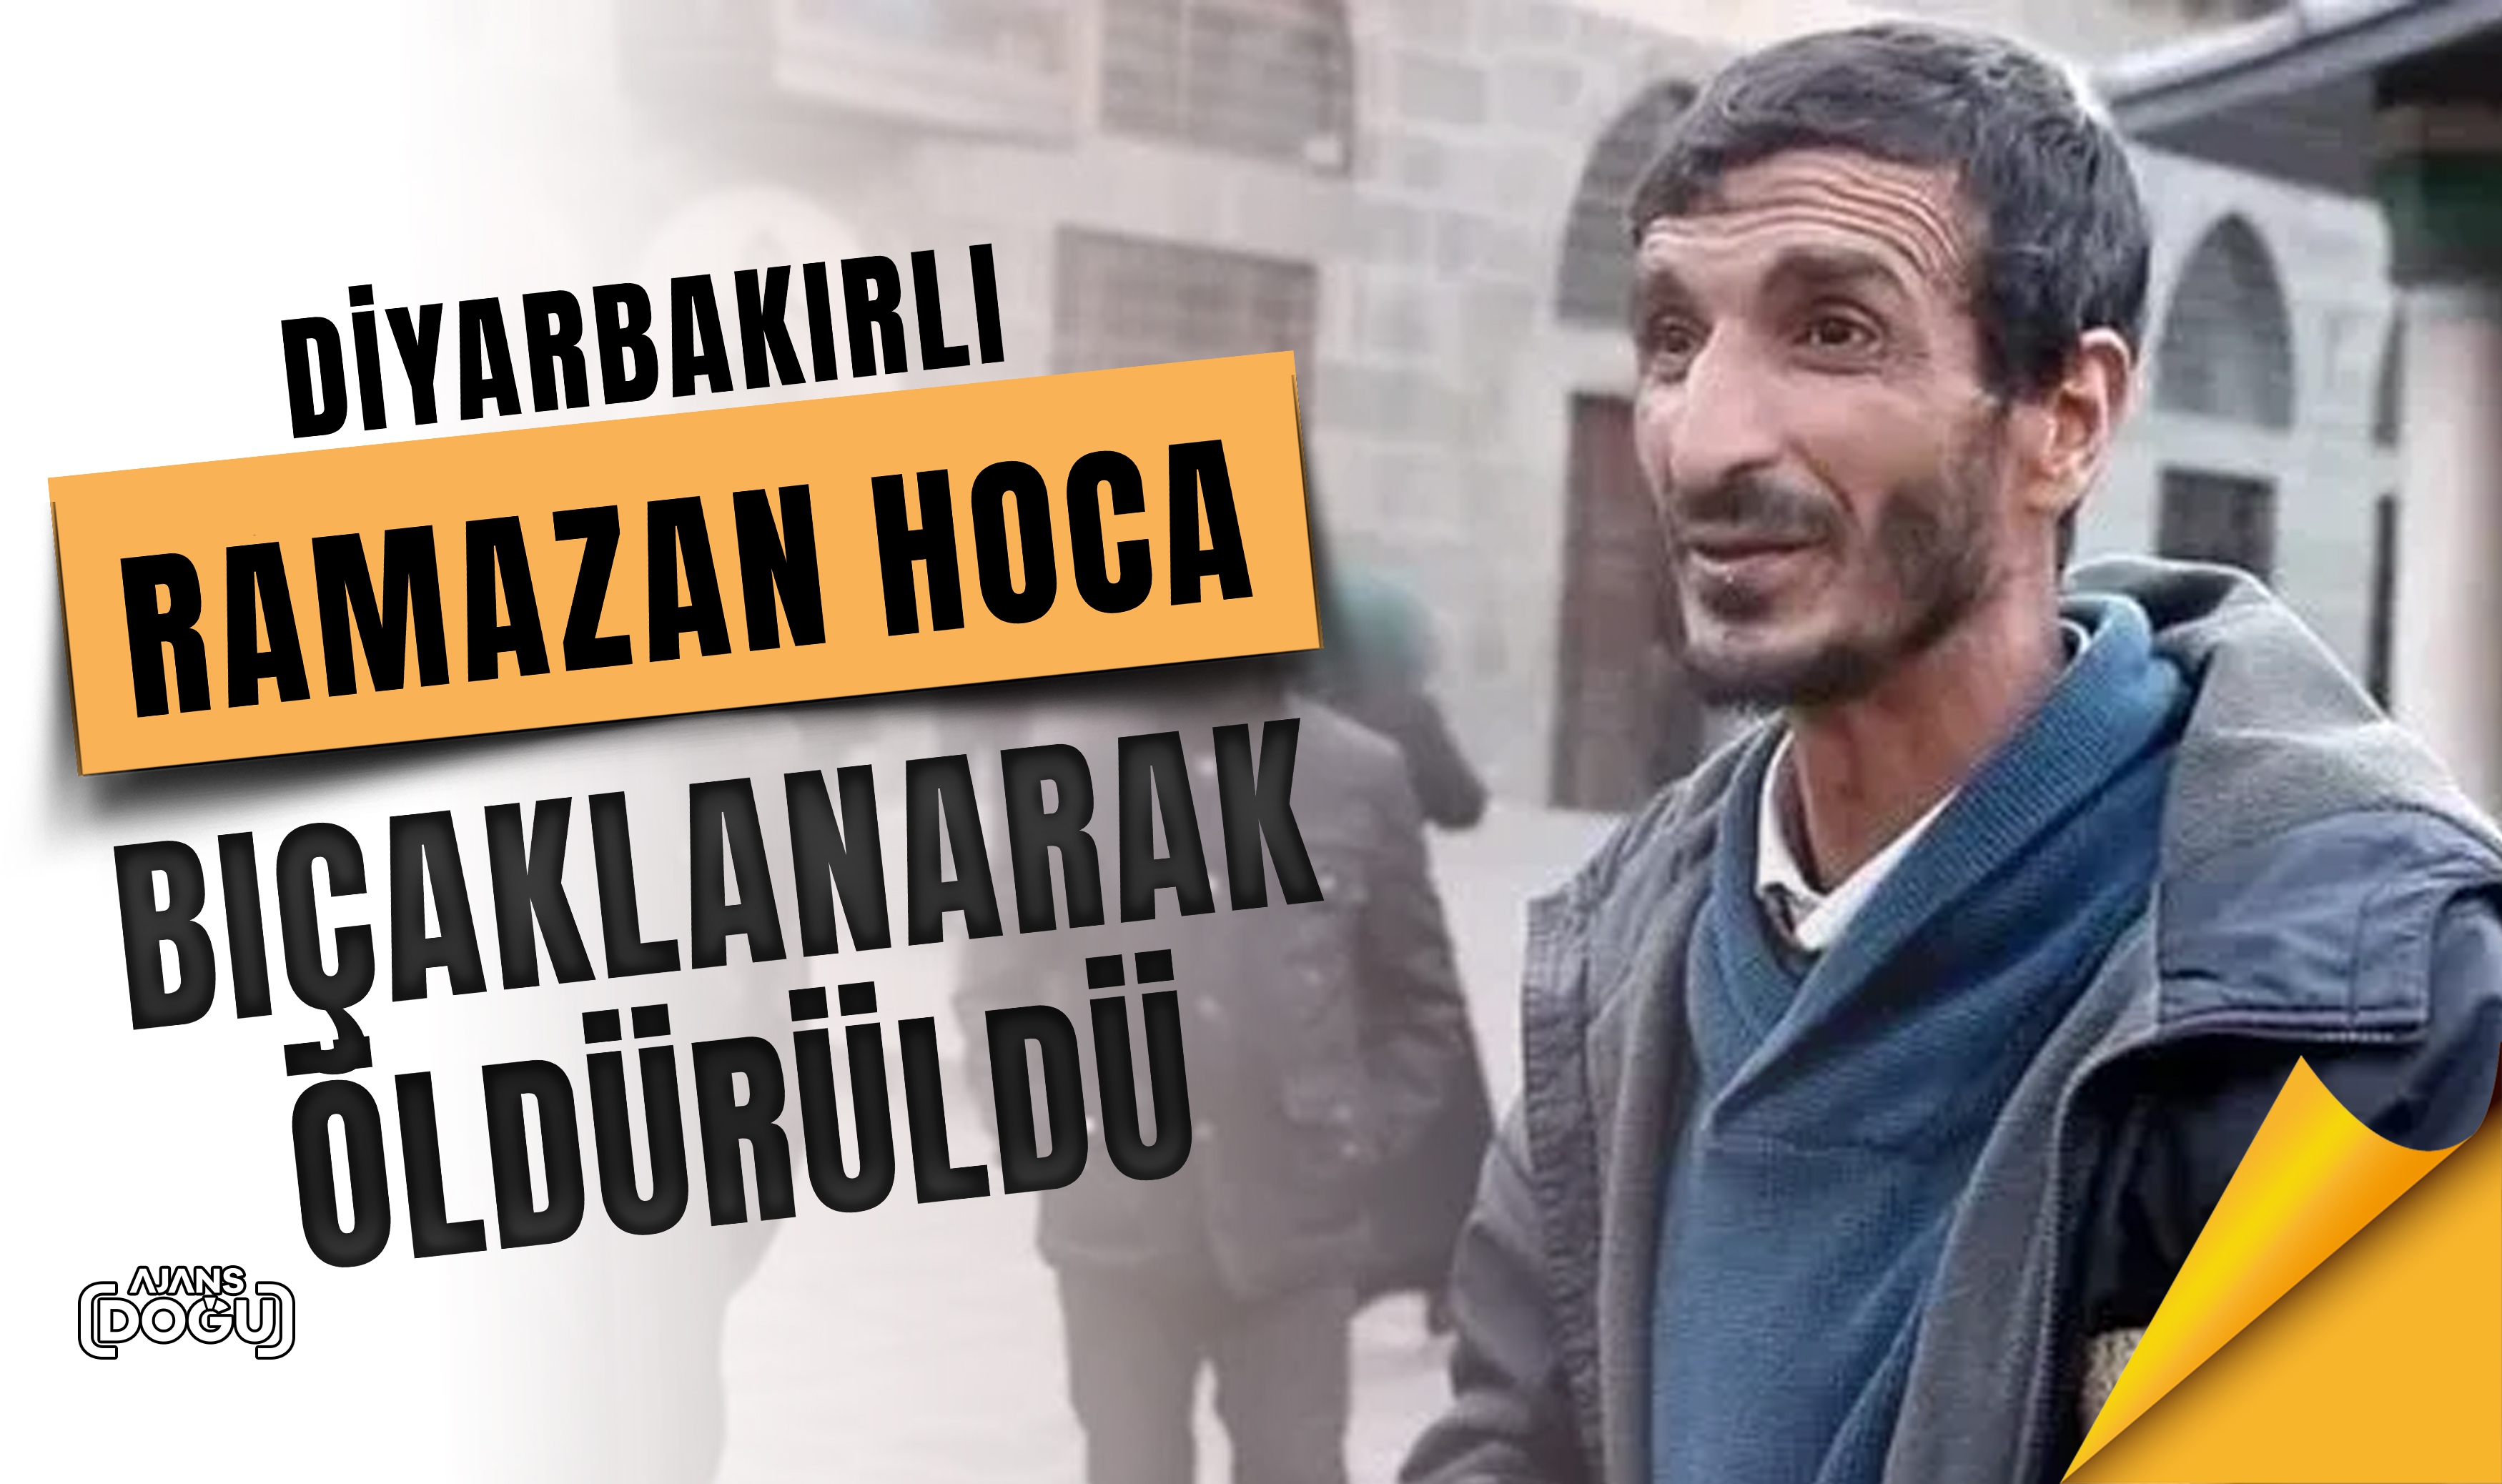 Diyarbakırlı  Ramazan hoca bıçaklanarak öldürüldü